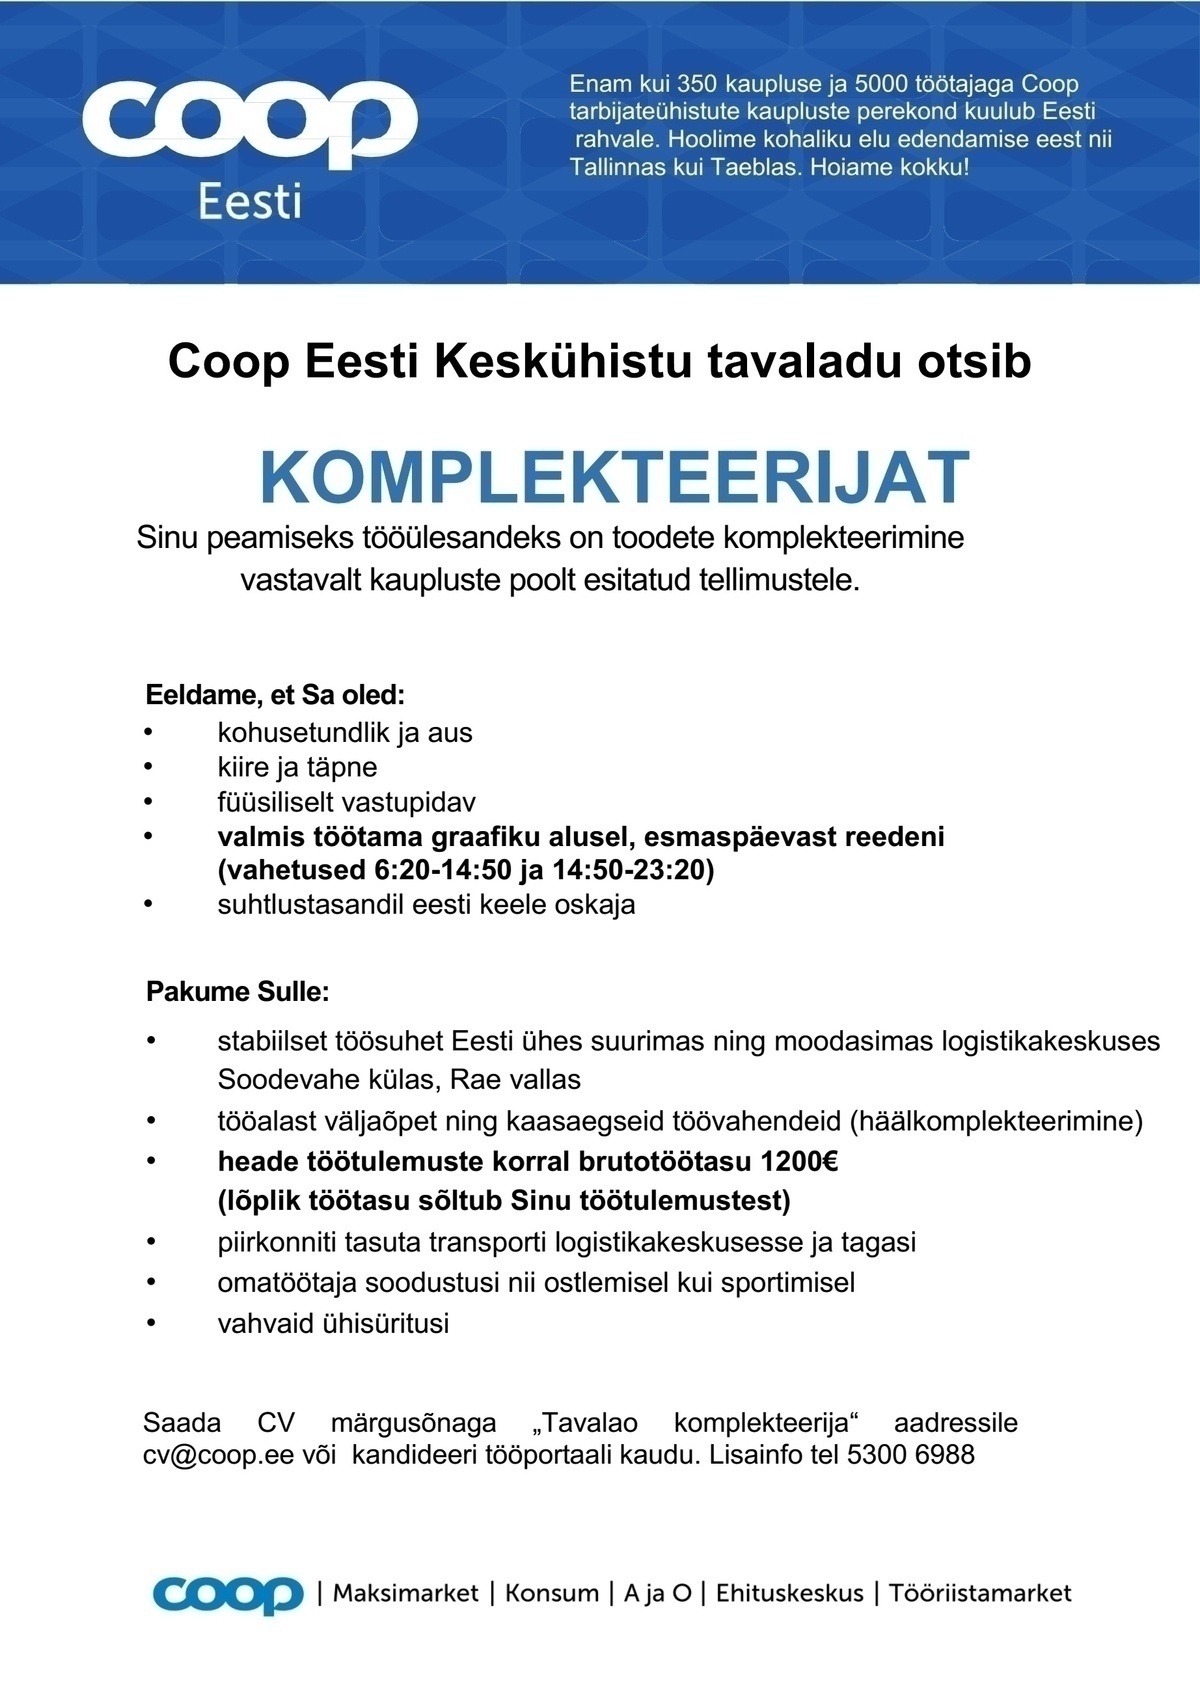 Coop Eesti Keskühistu Komplekteerija (tavaladu)